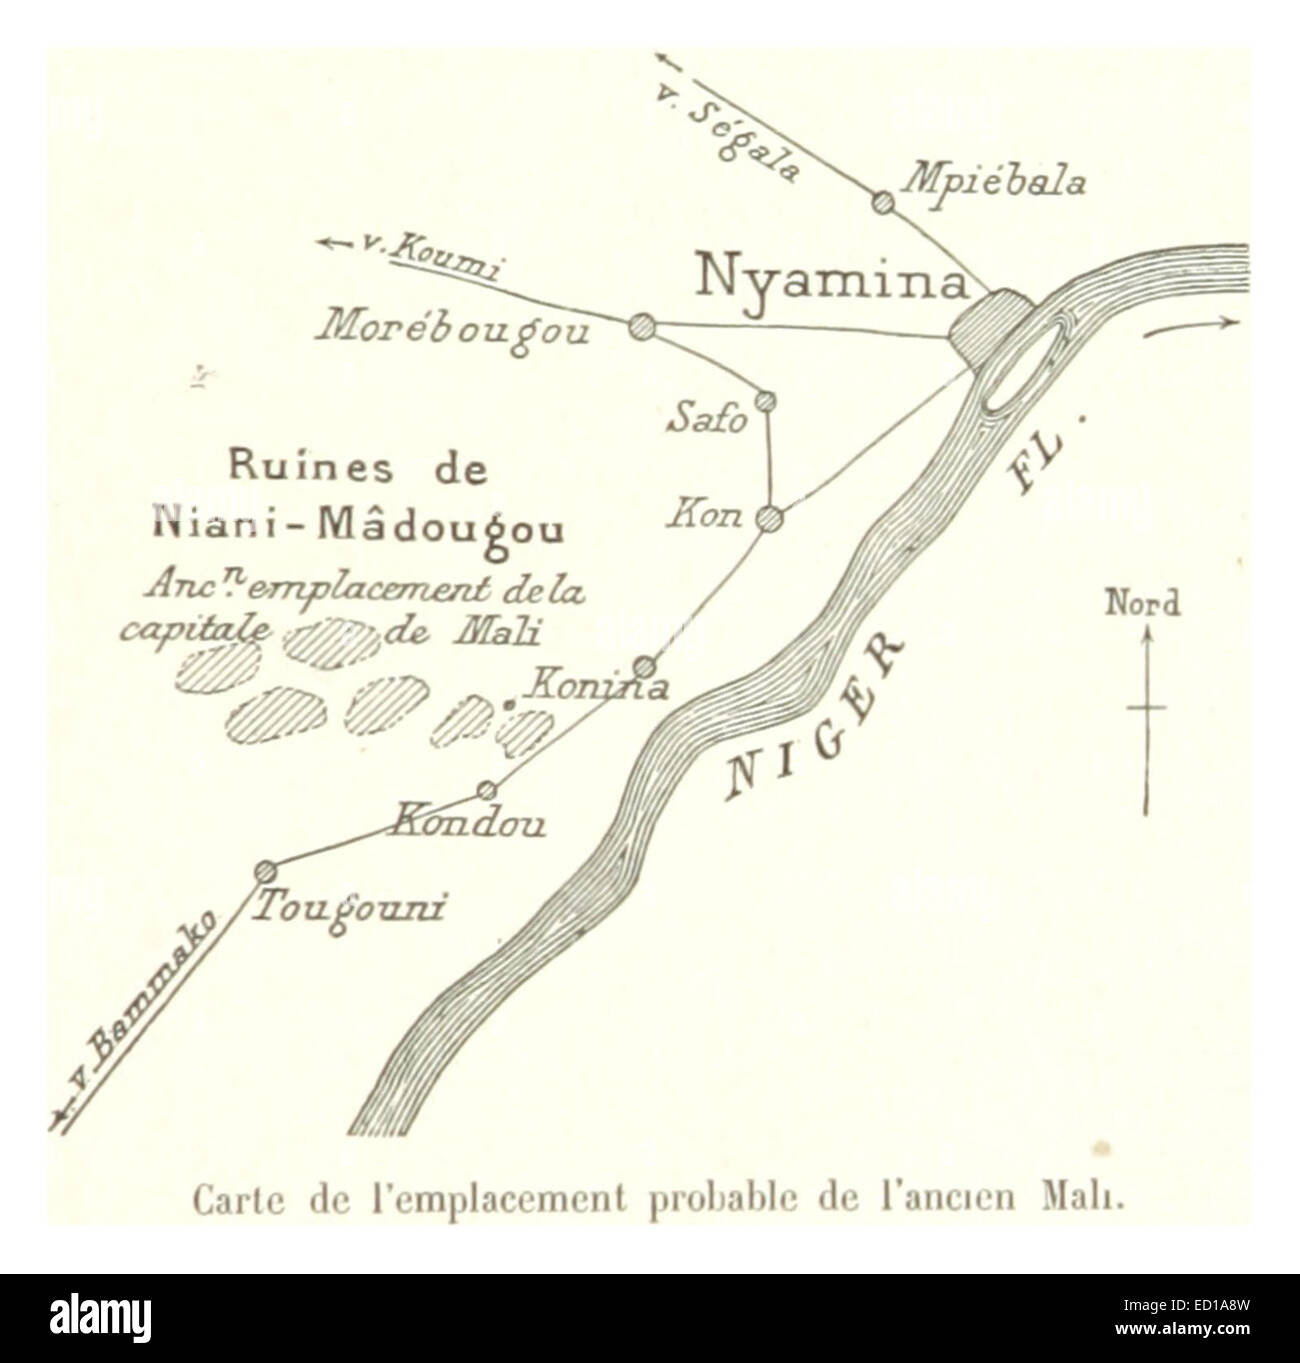 Pg071 Carte de l'emplacement probable de l'ancien Mali Stock Photo